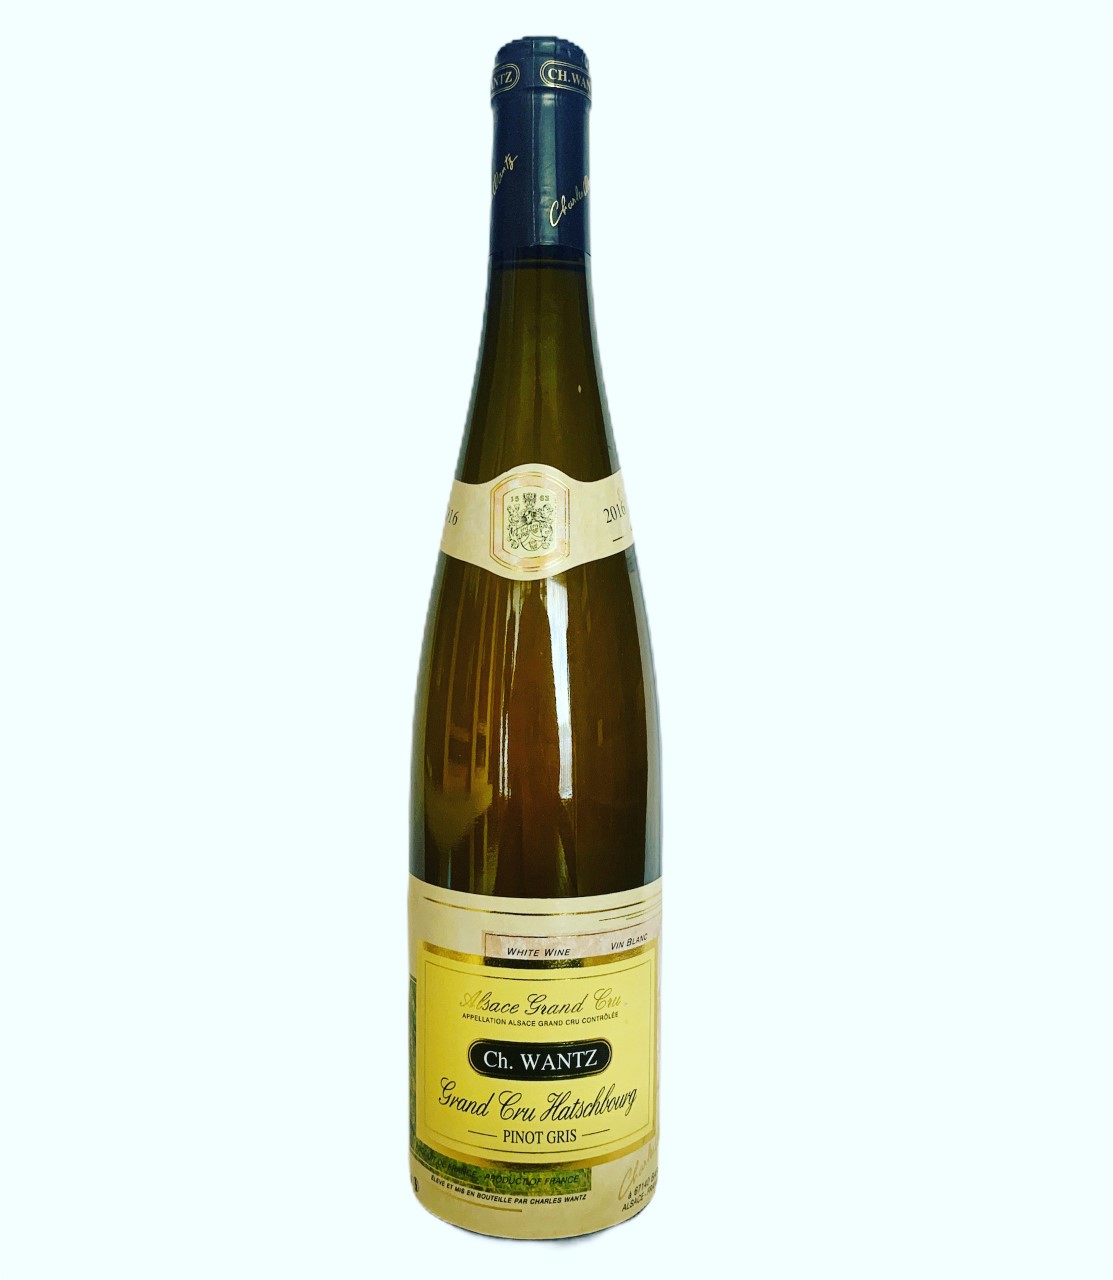 Charles Wantz Alsace Grand Cru Hatschbourg Pinot Gris 2016